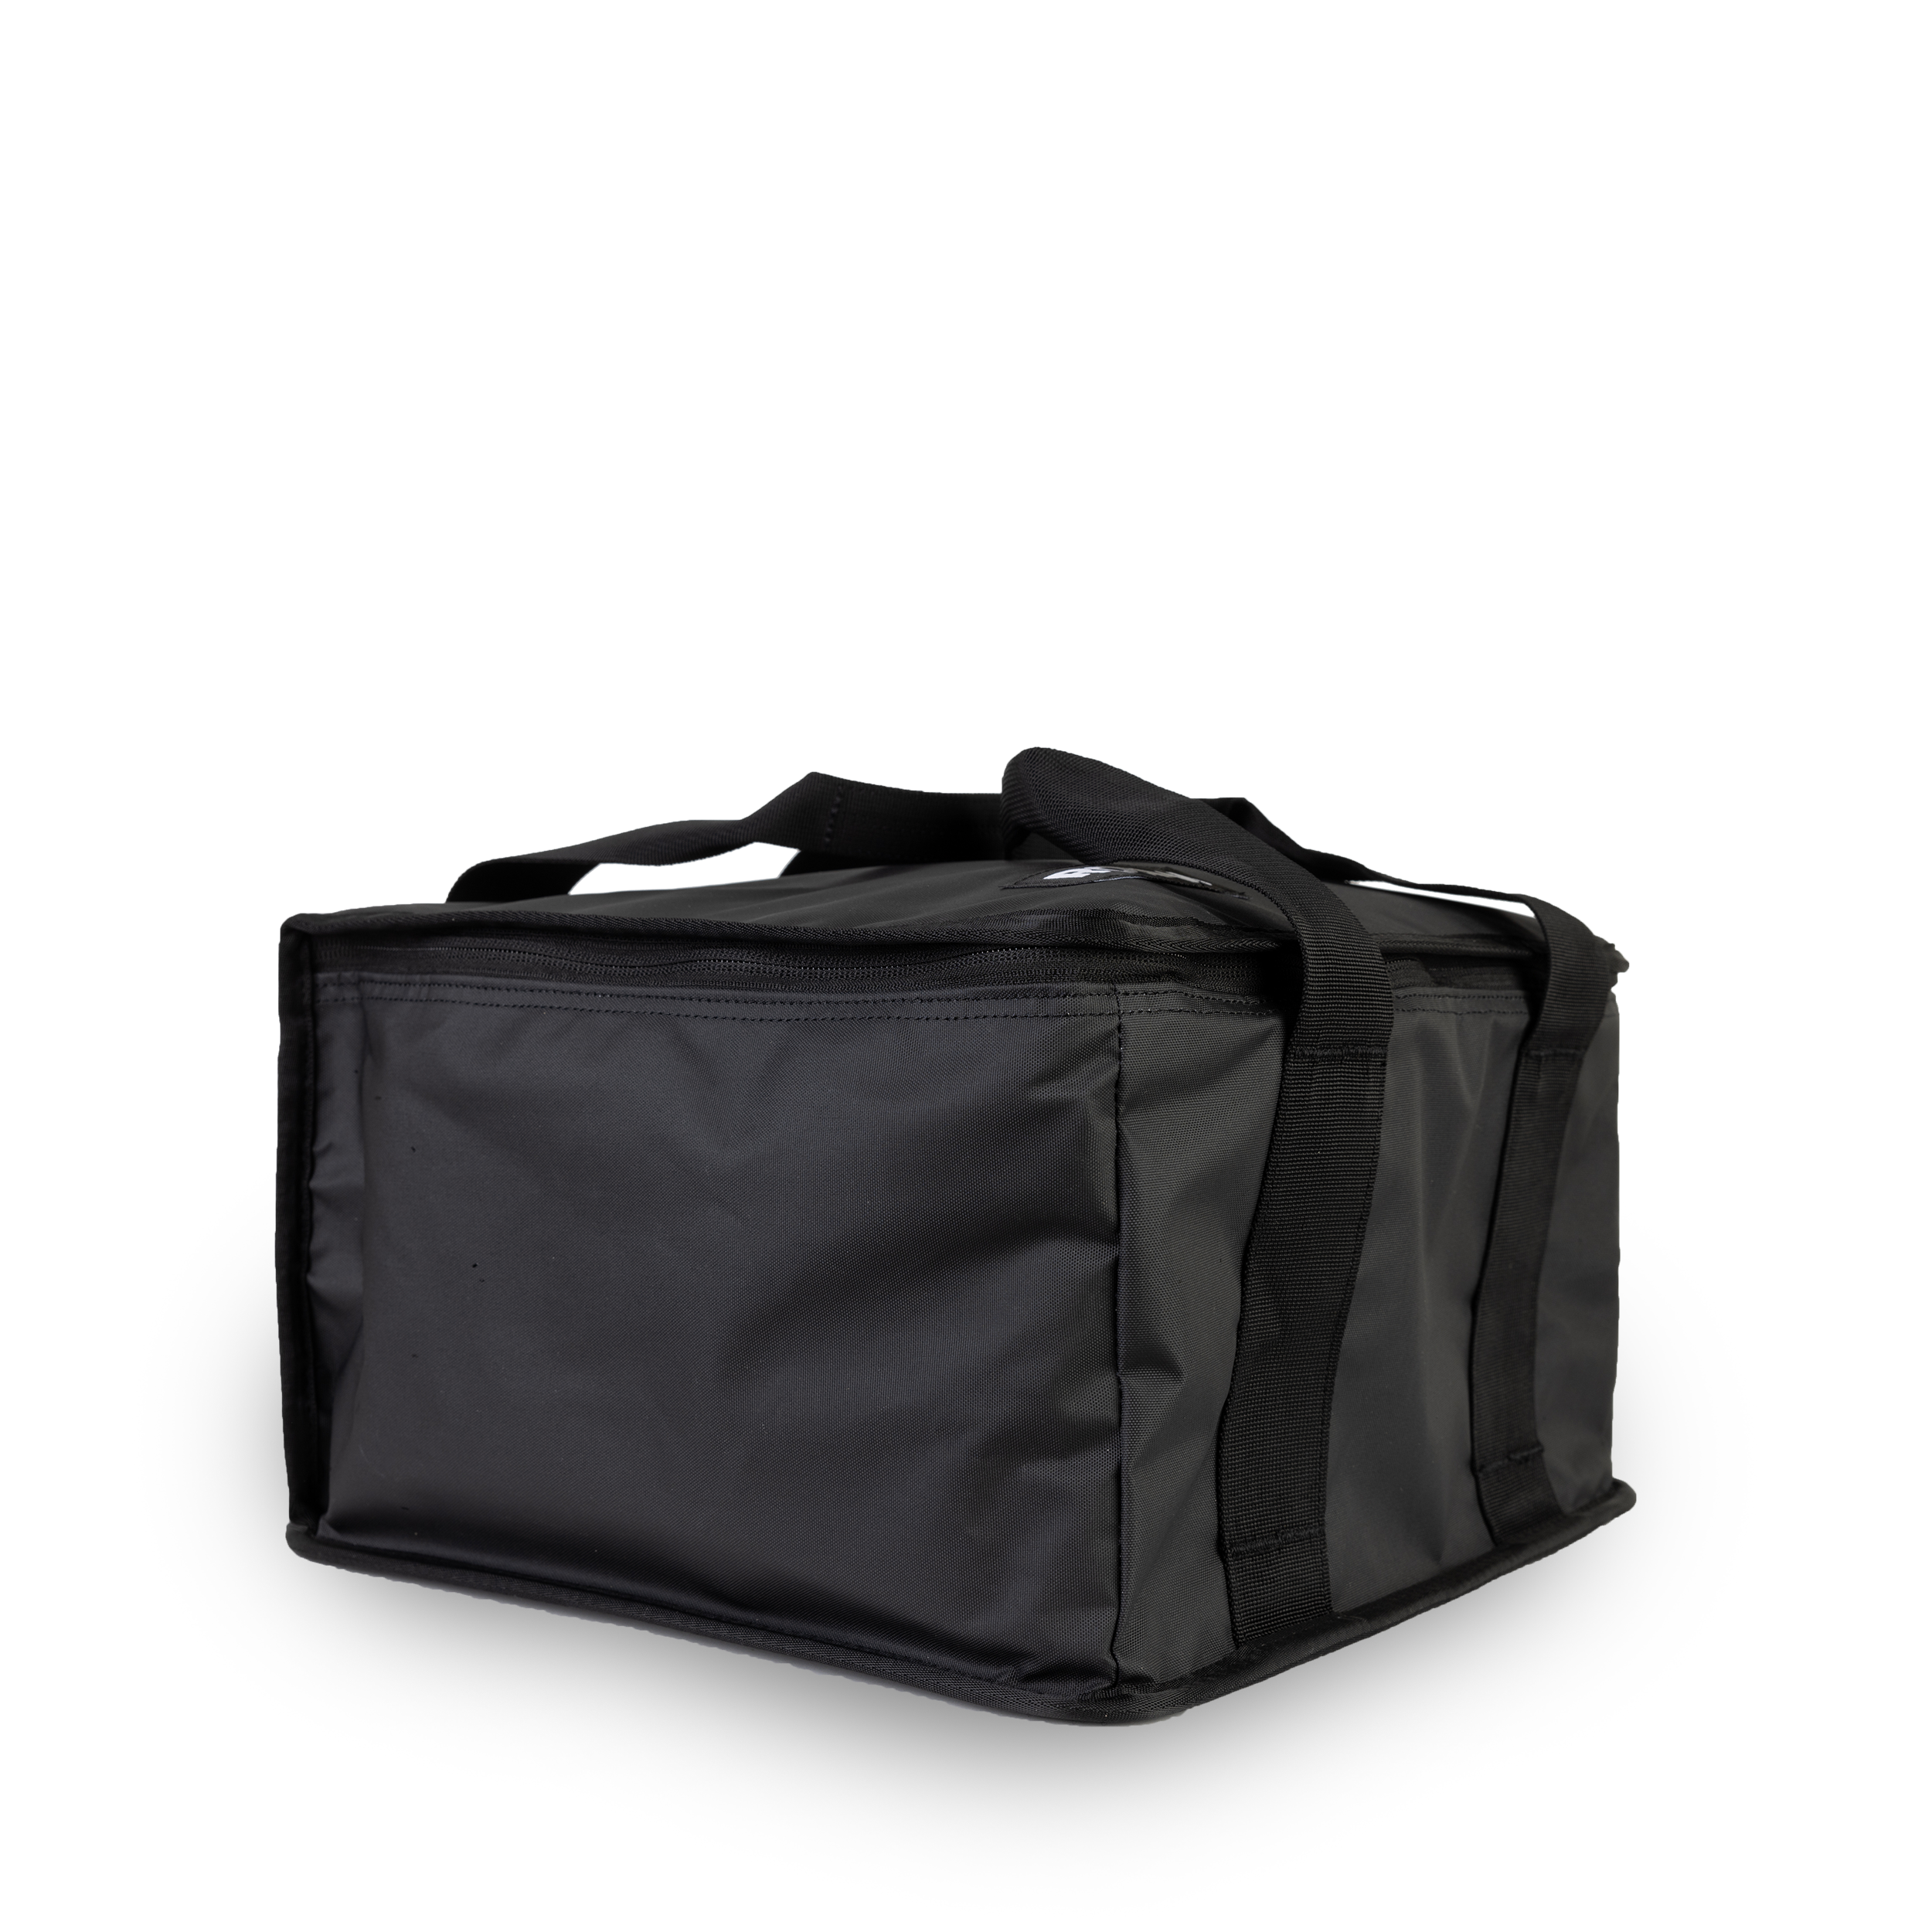 Backpack, School Bag, College Bag, Travel Backpack, Laptop Bag, Backpack